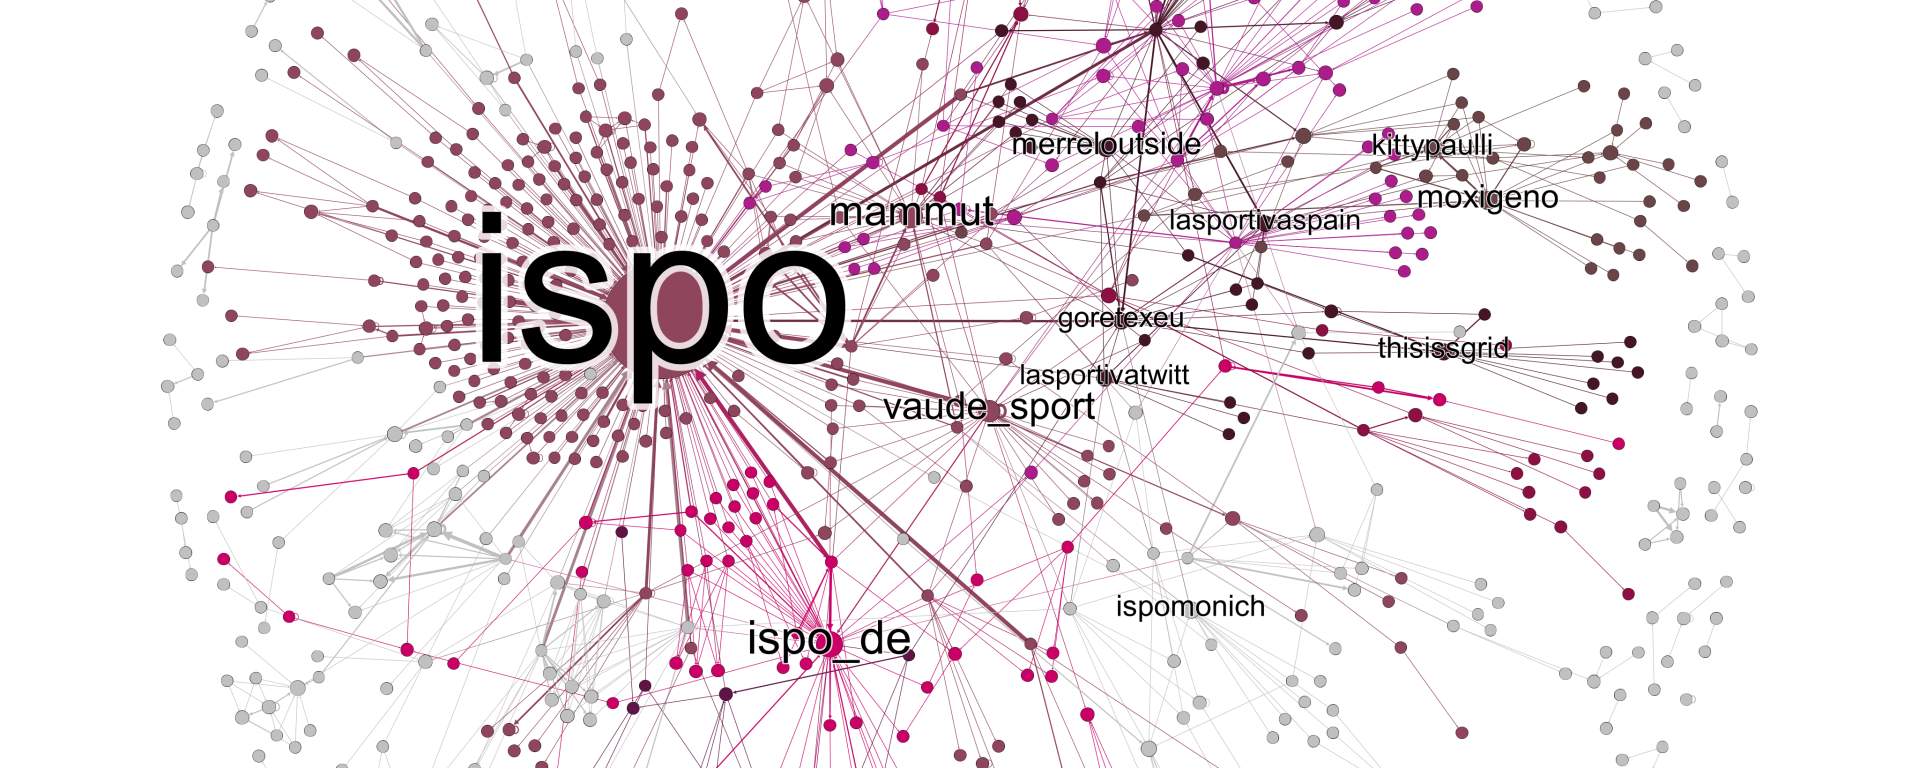 ISPO Twitter Social Network Analysis